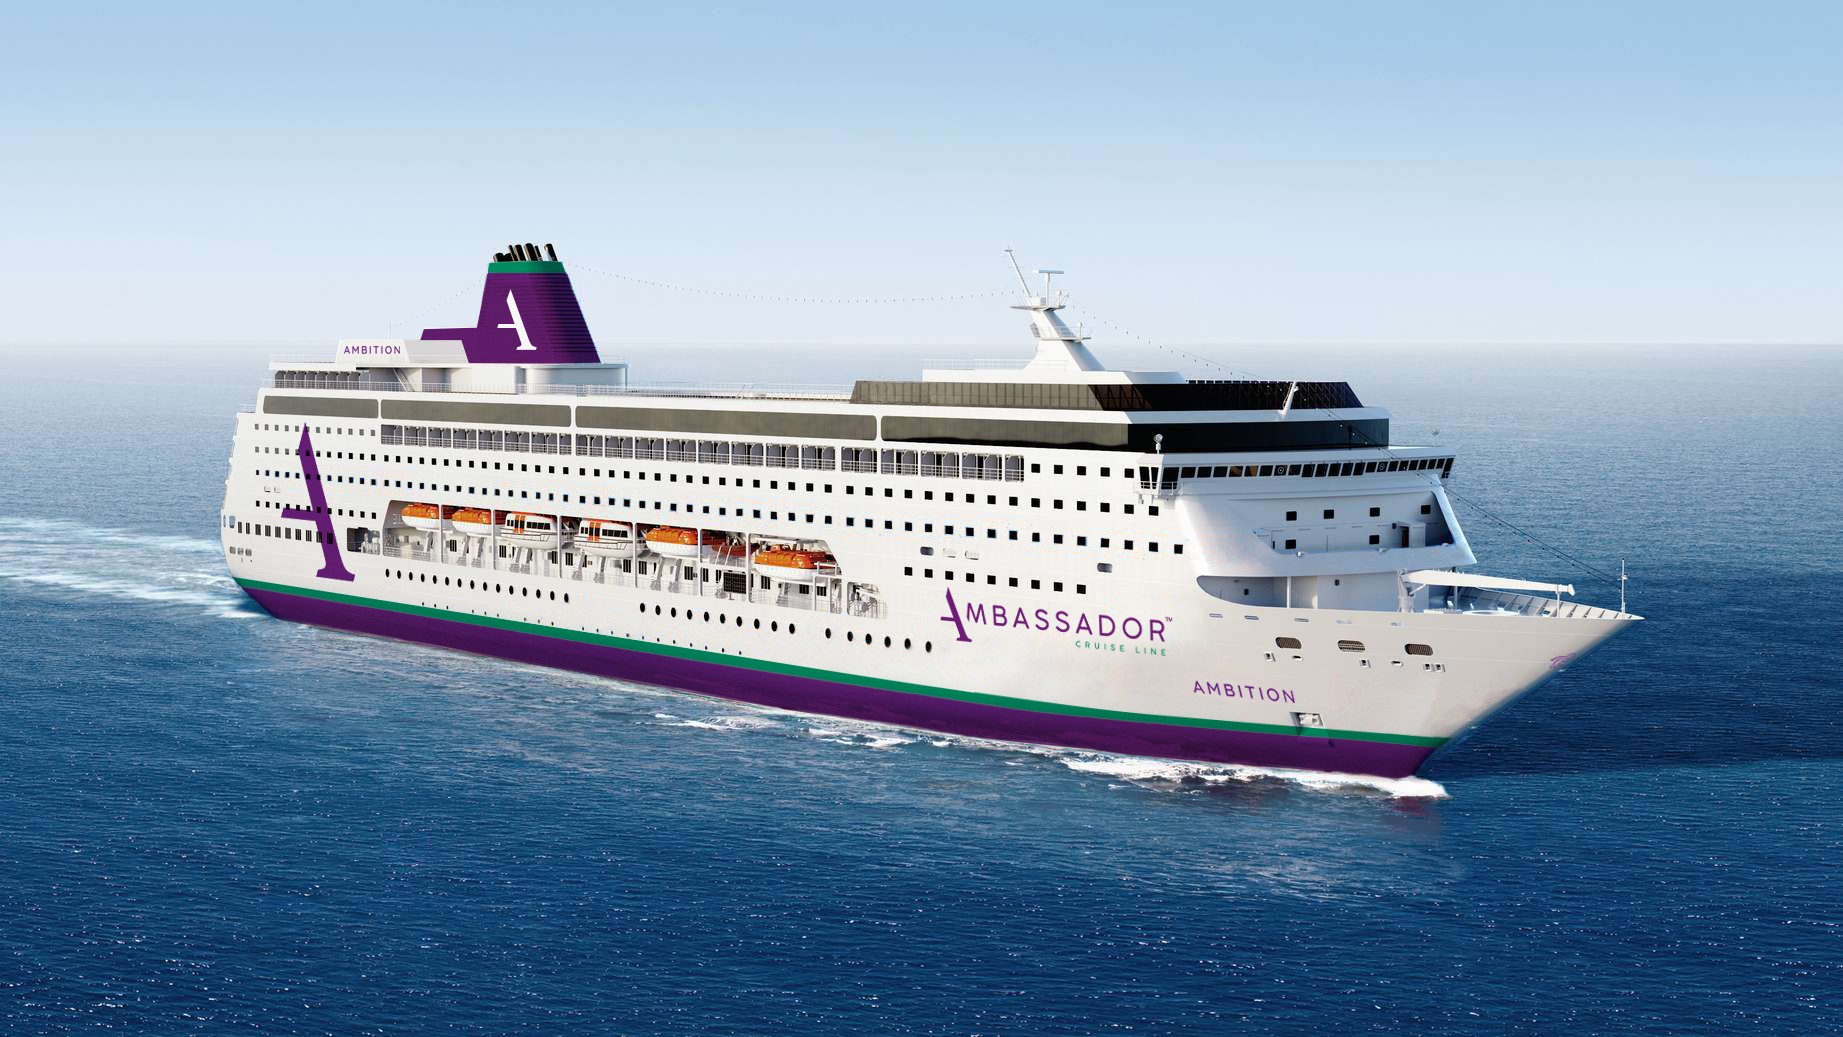 Ambition Ambassador Cruise Line expands its fleet Cruising Journal